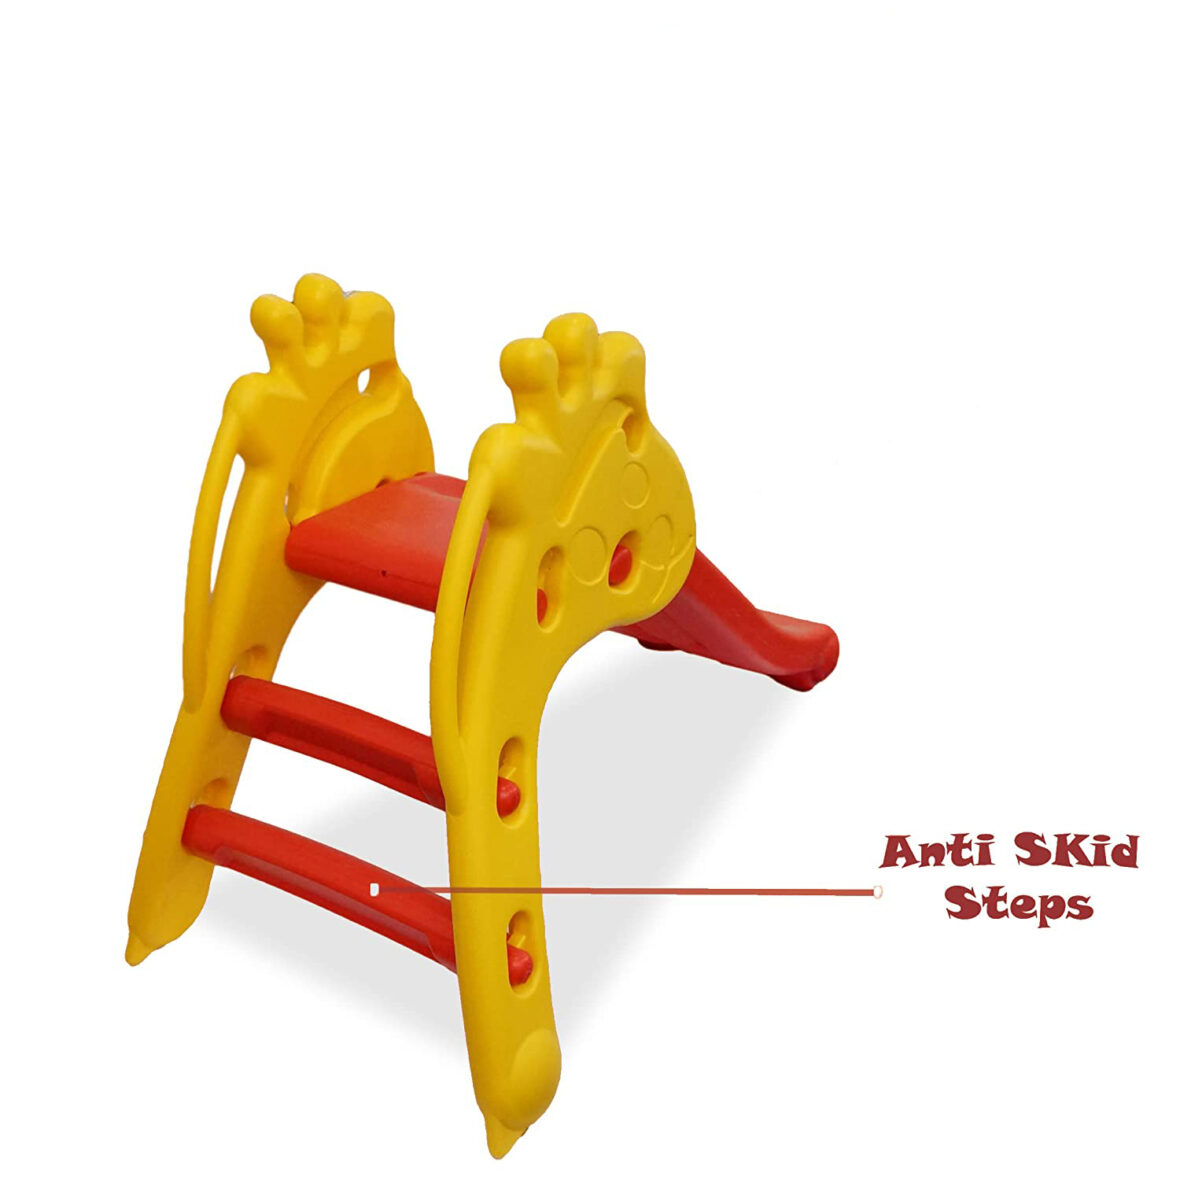 U Smile Slide for Kids – Playgro My Giraffe Slide Foldable Beginners Slider -for Boys and Girls Perfect Slides / Toys for Home, Indoor or Outdoor (Giraffe Slide)